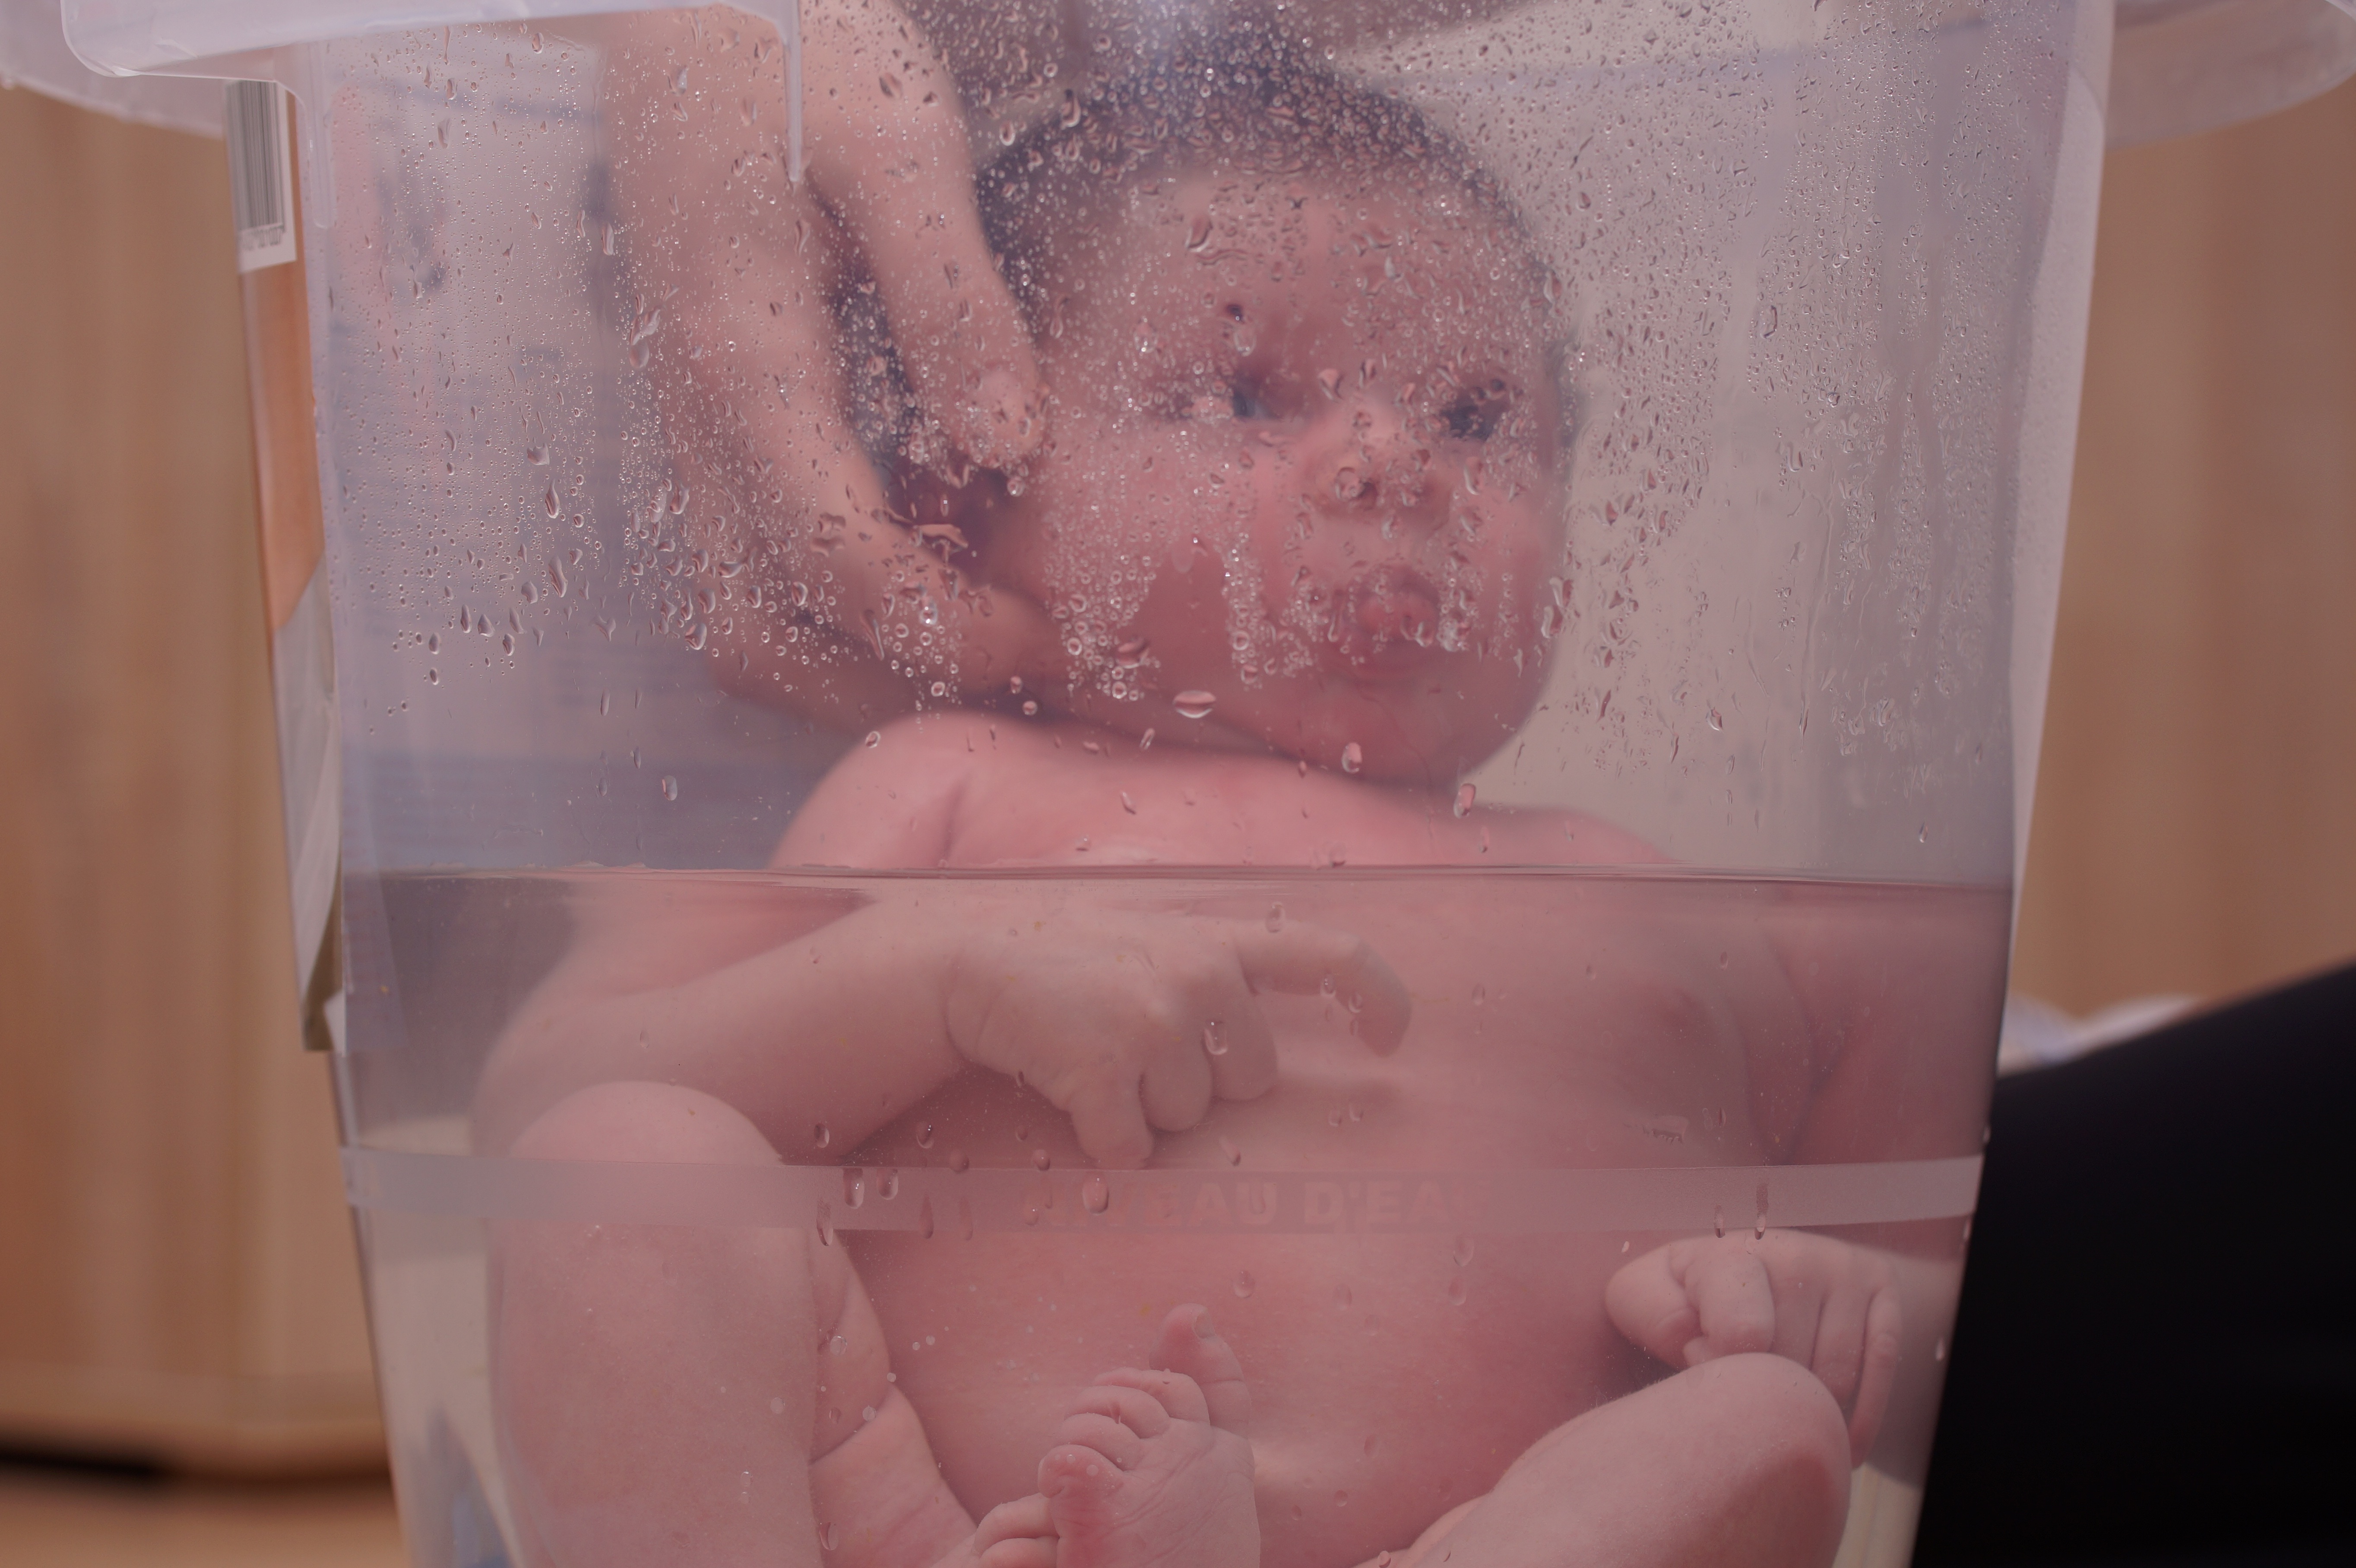 baby taking a bath